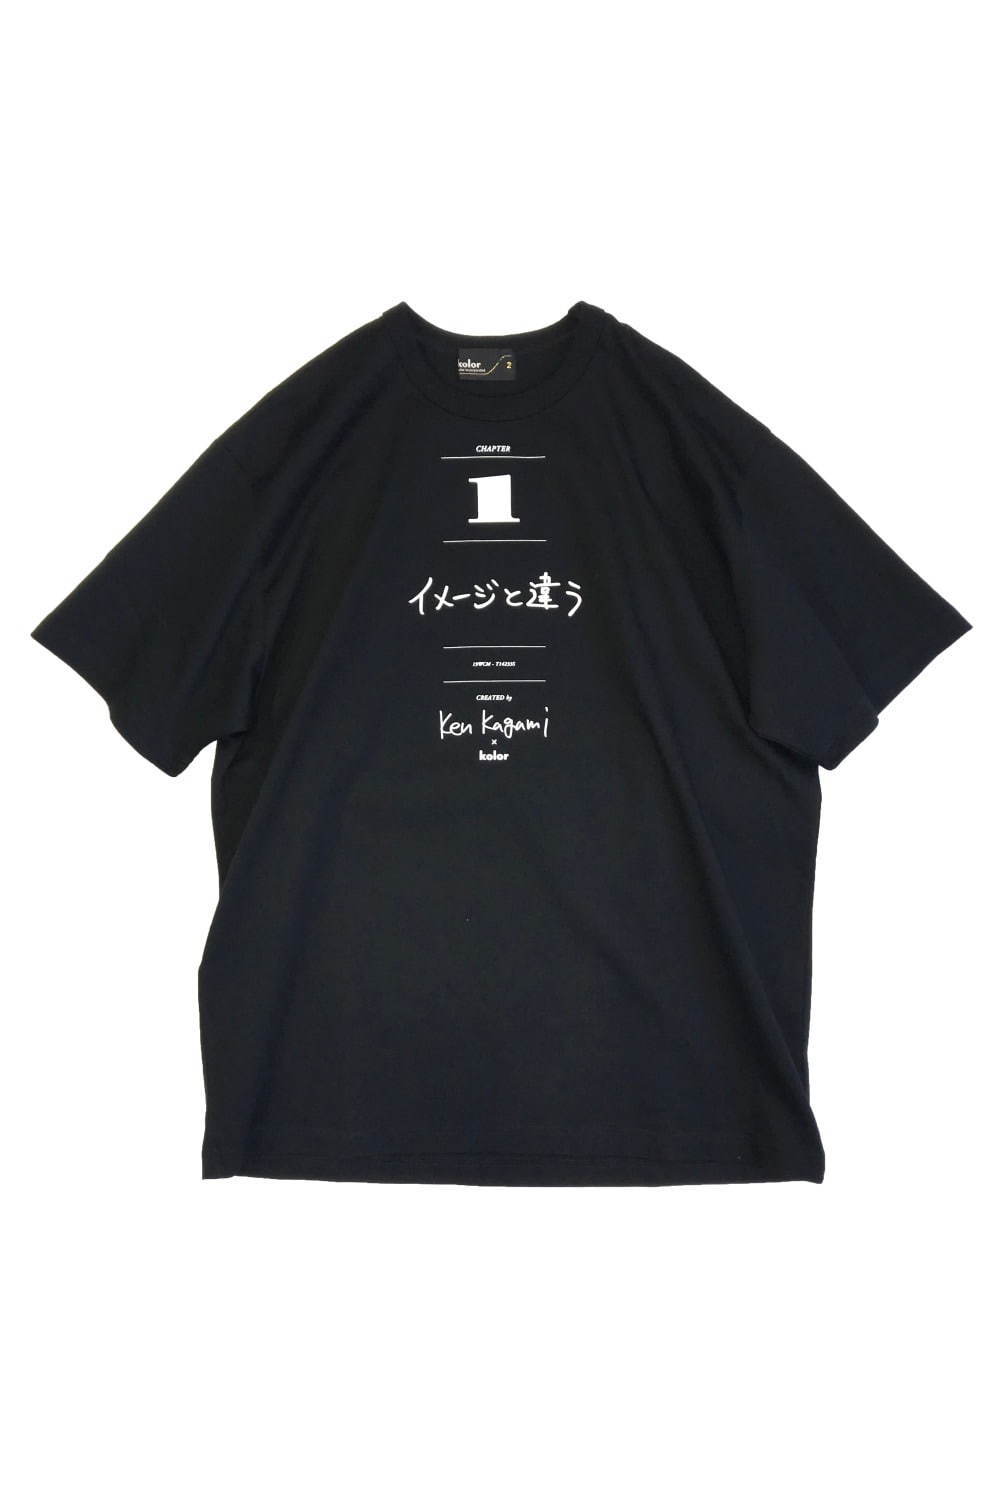 カラー×現代美術作家 加賀美健のコラボTシャツ、ファッション関連の3つのメッセージ入り｜写真3